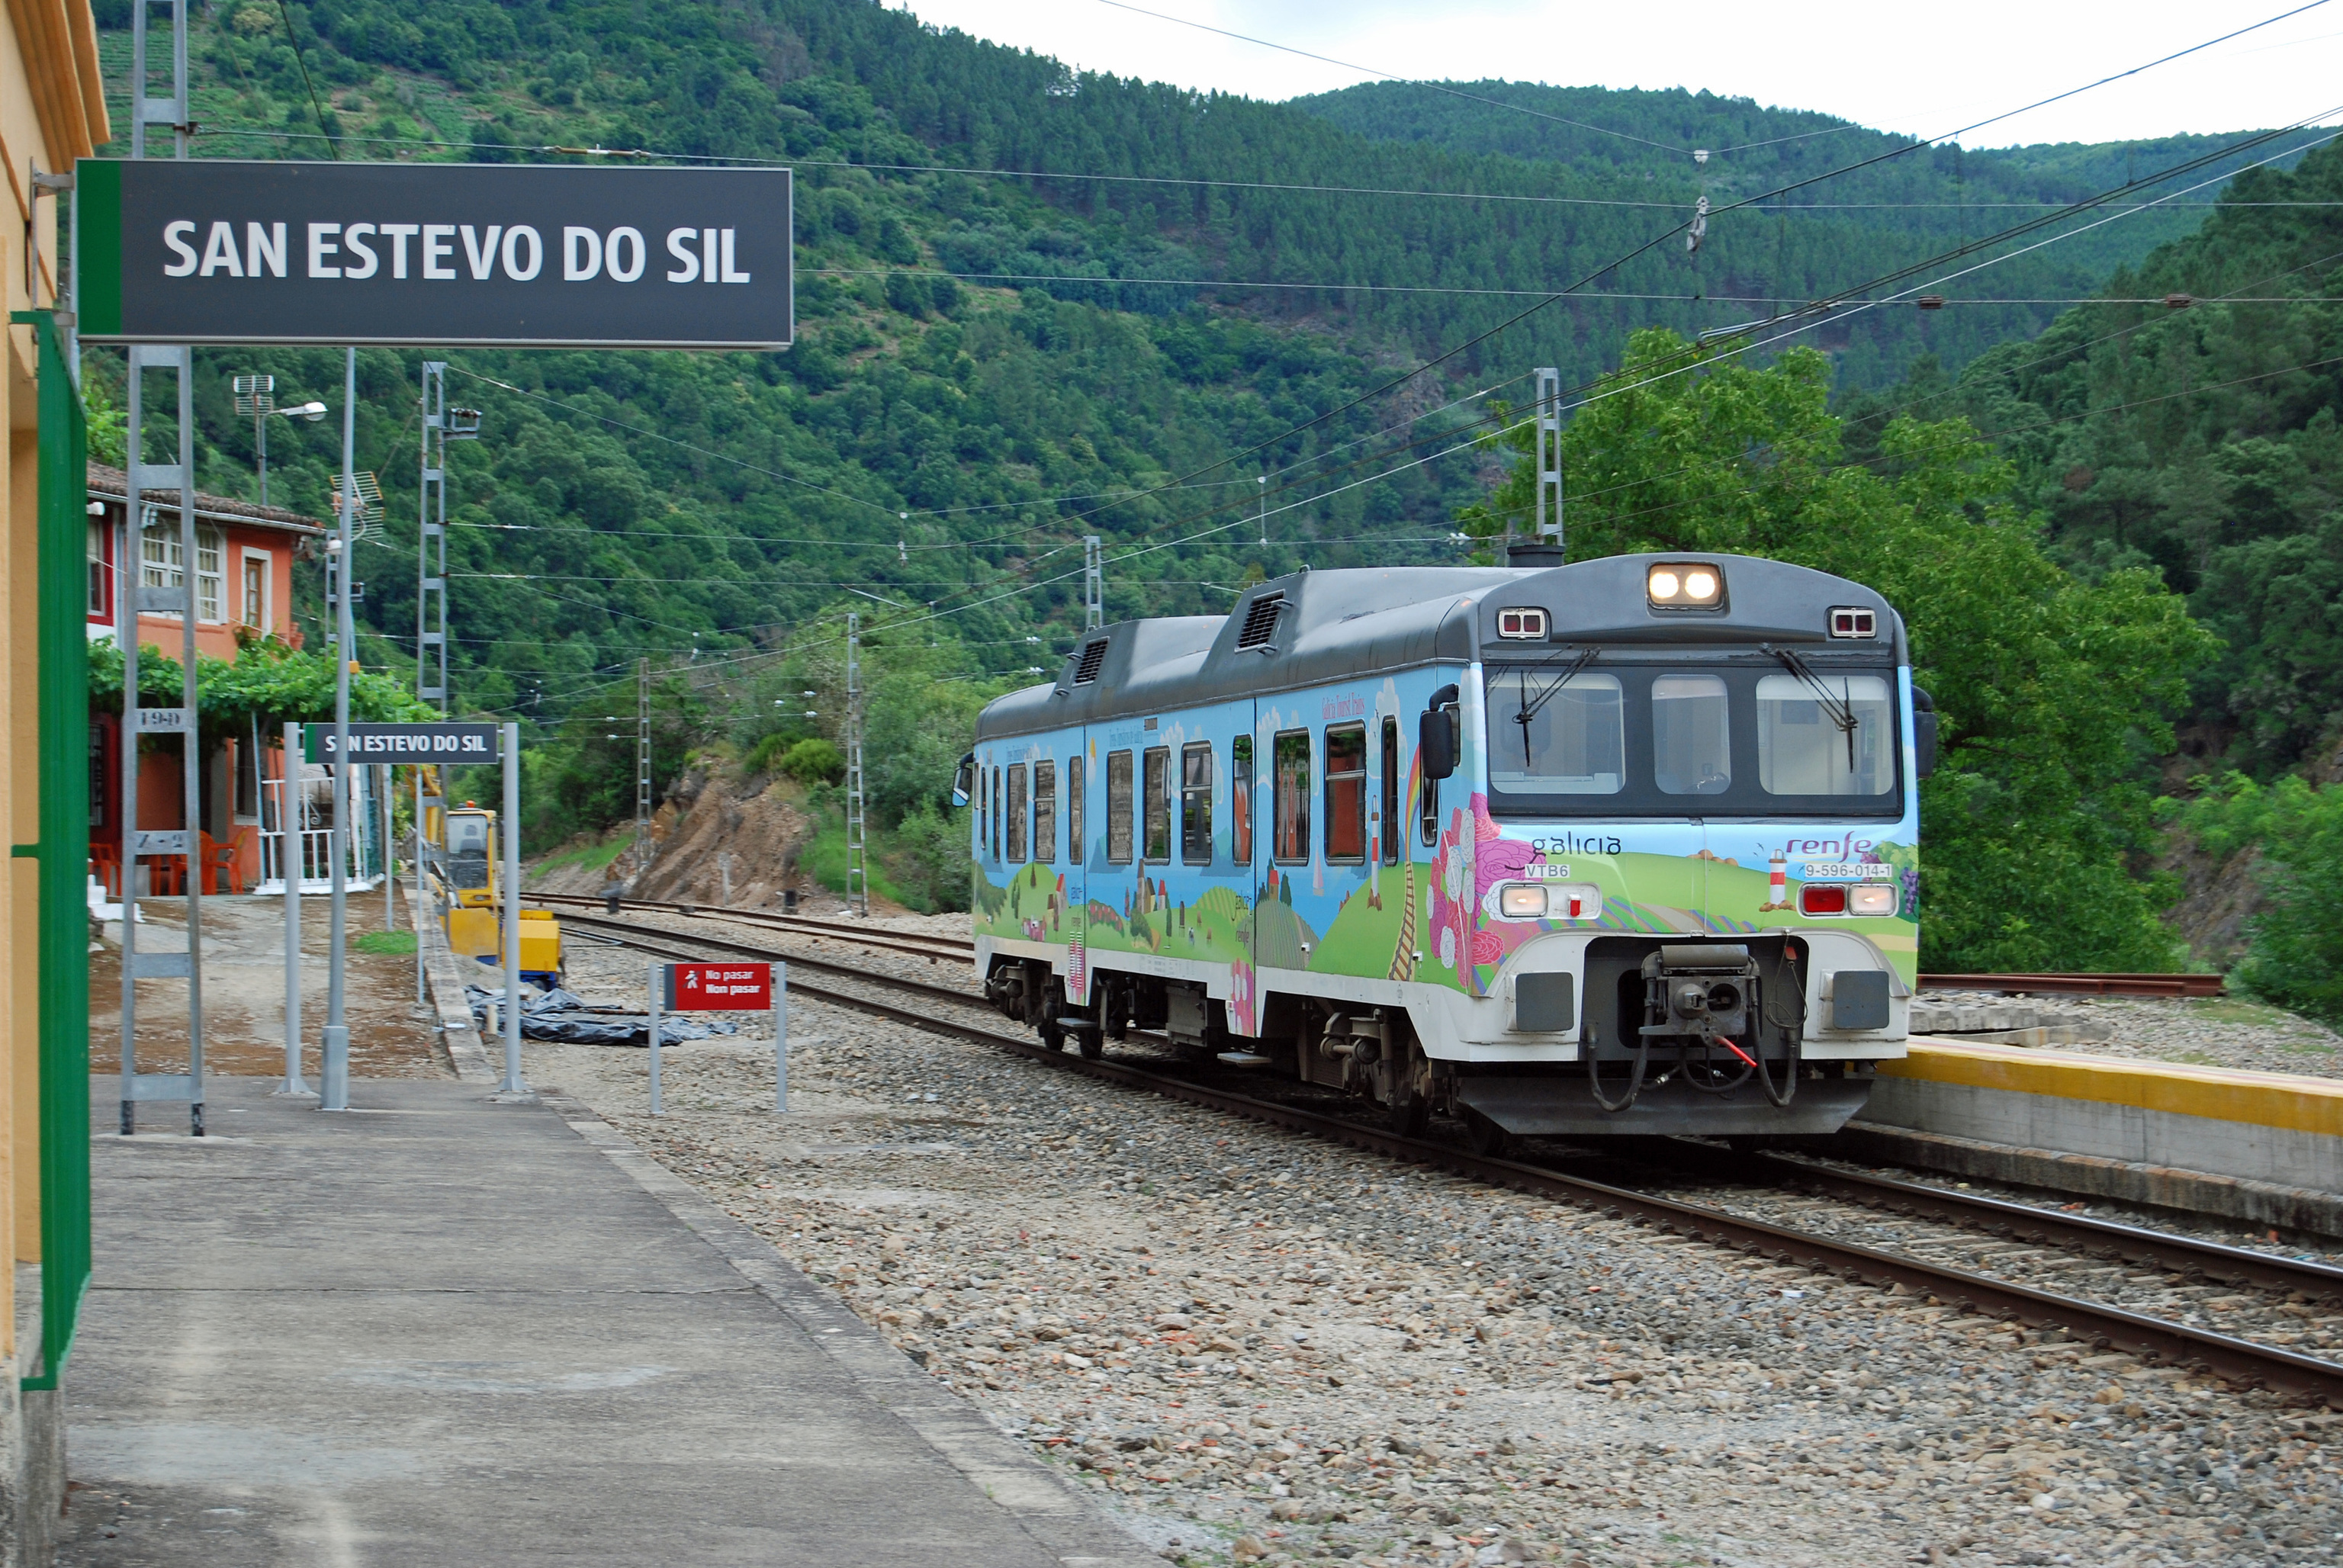 Estación de San Estevo do Sil.